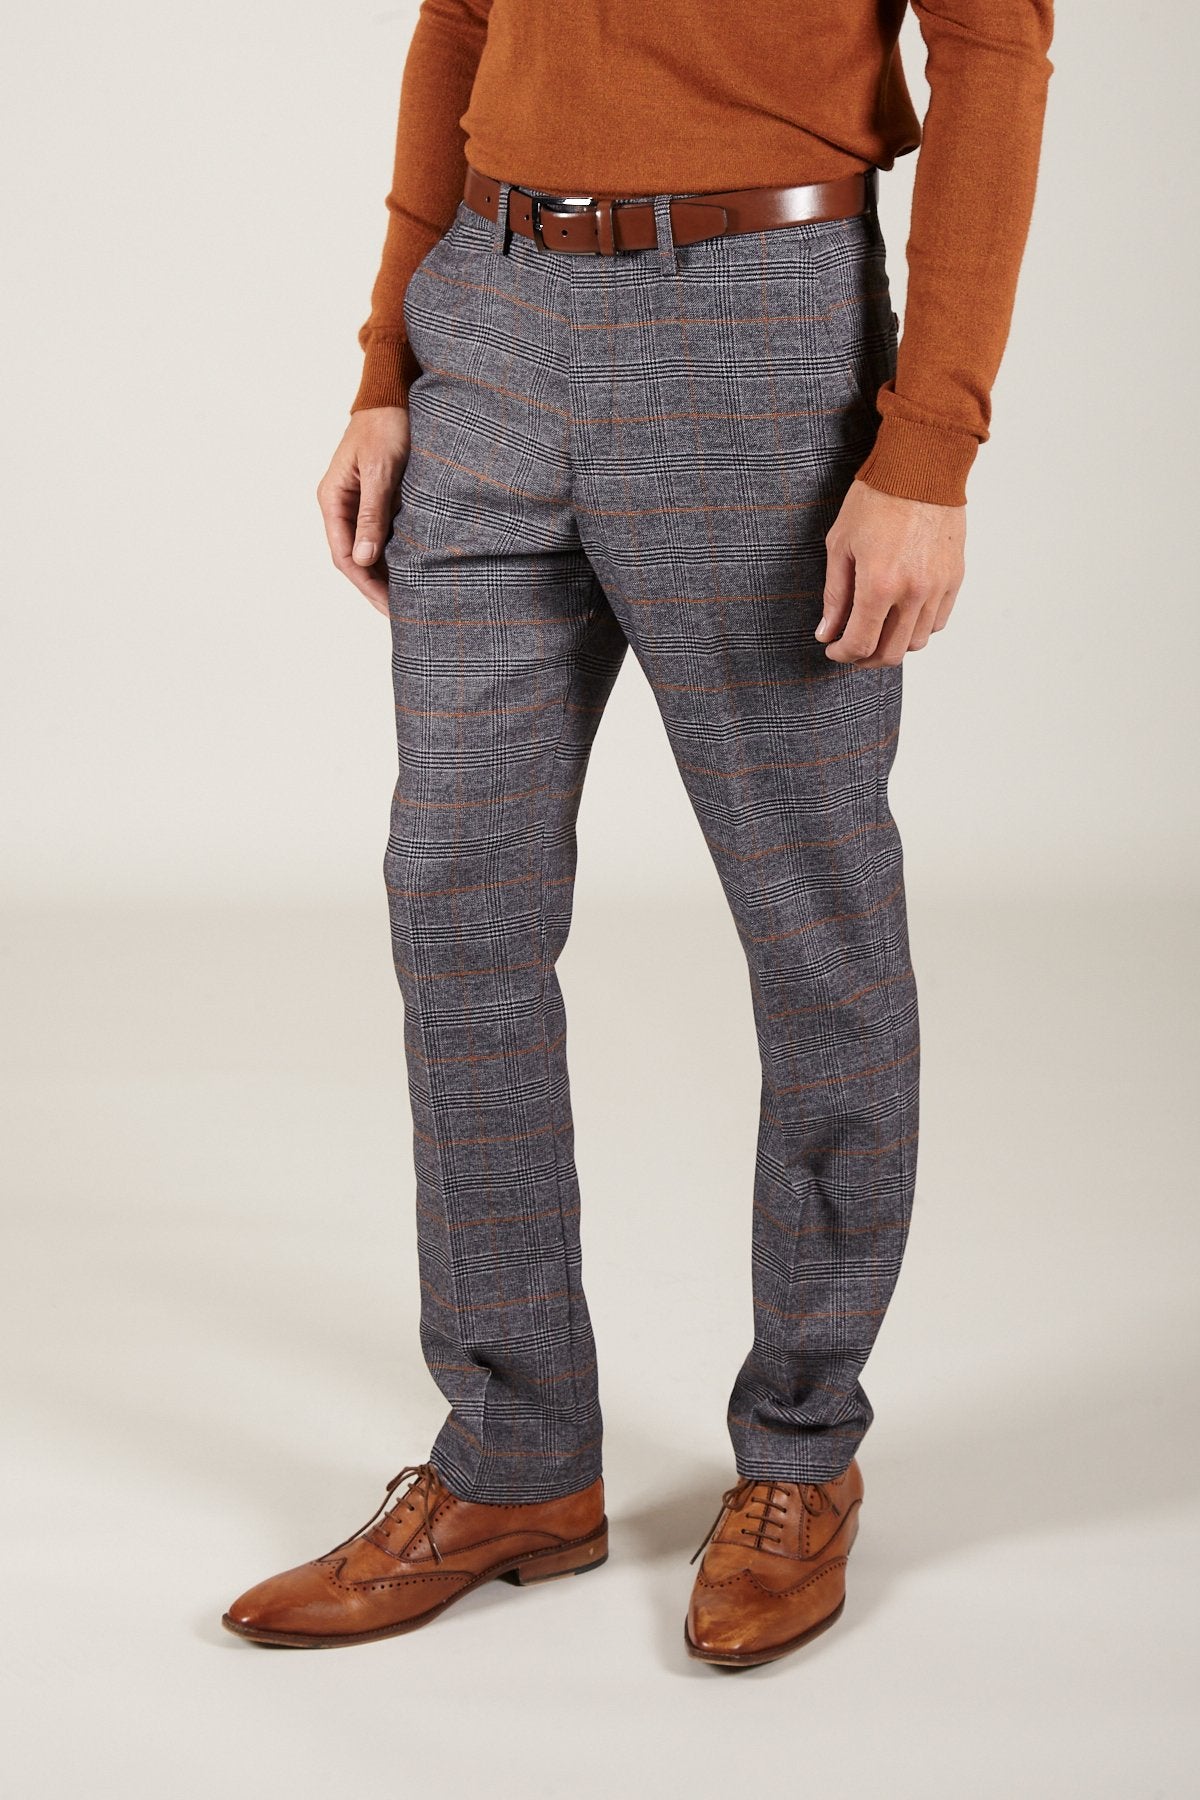 JENSON - Grey Check Trousers